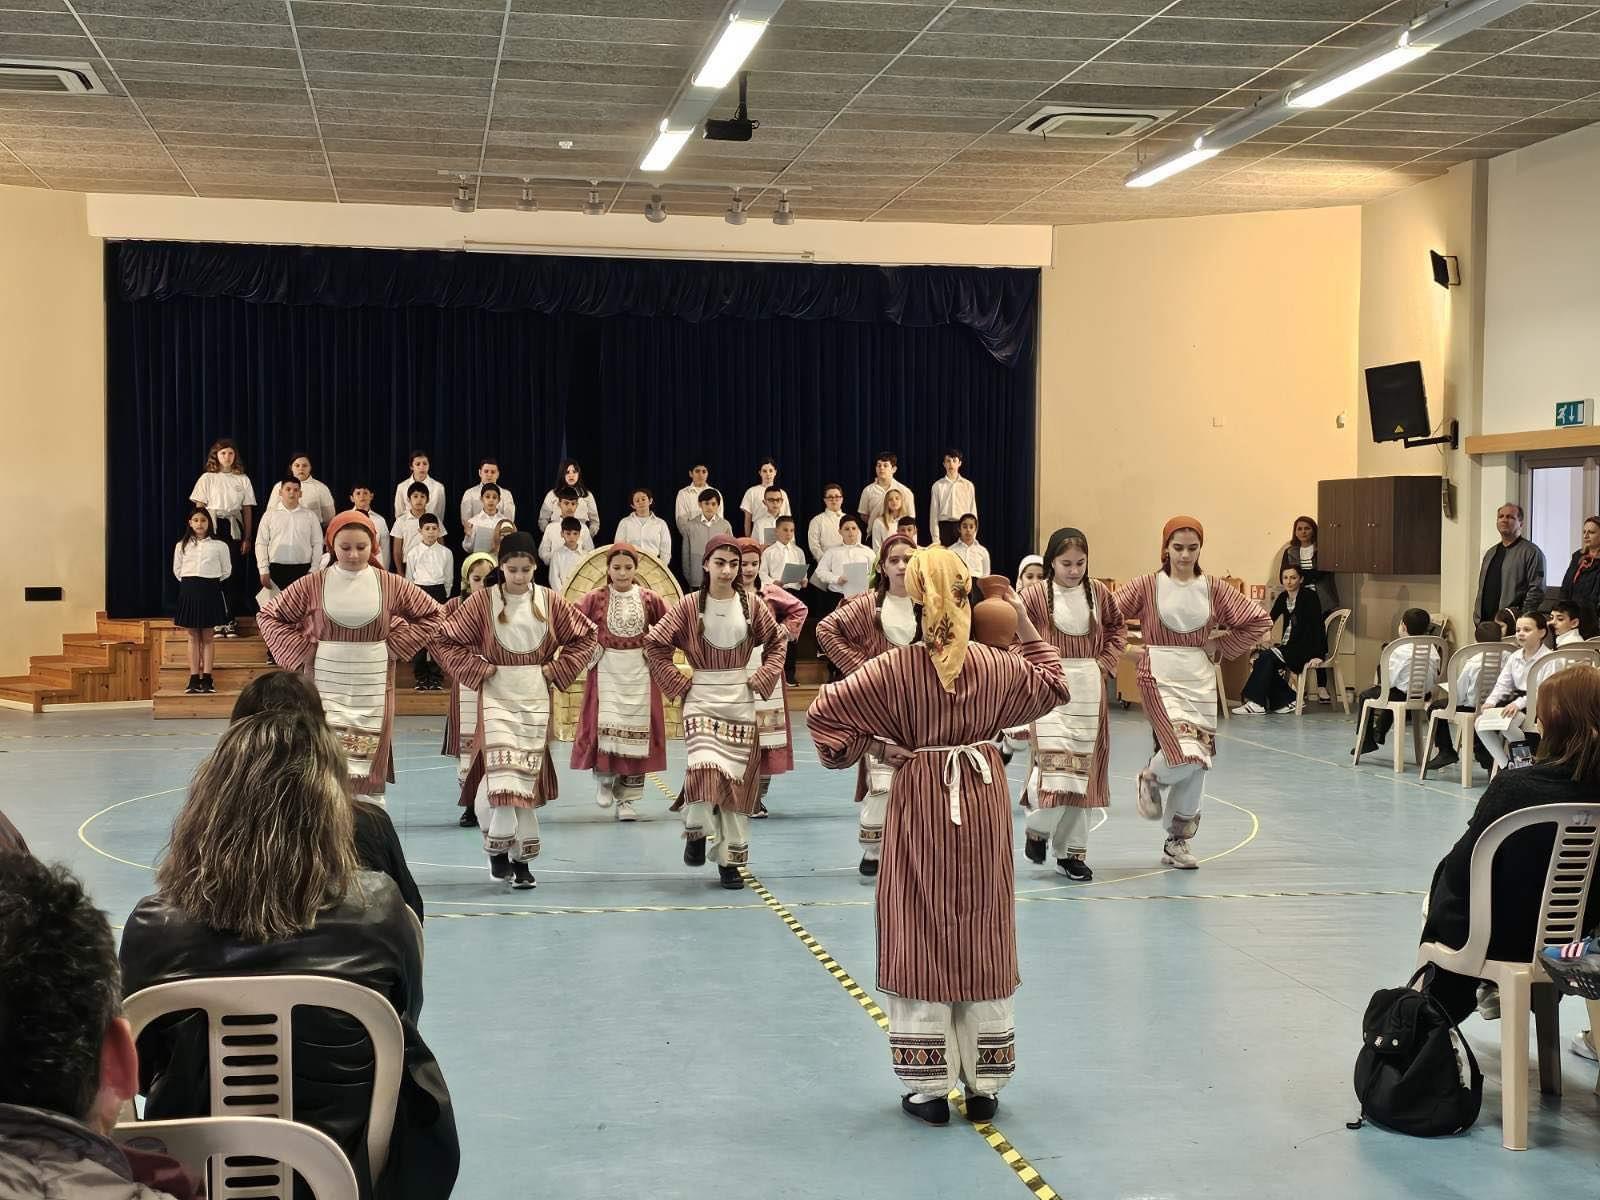 Μεγάλη διάκριση για το Β’Δημοτικό σχολείο Γεροσκήπου με βραβεία για την κυπριακη παράδοση (ΦΩΤΟ)